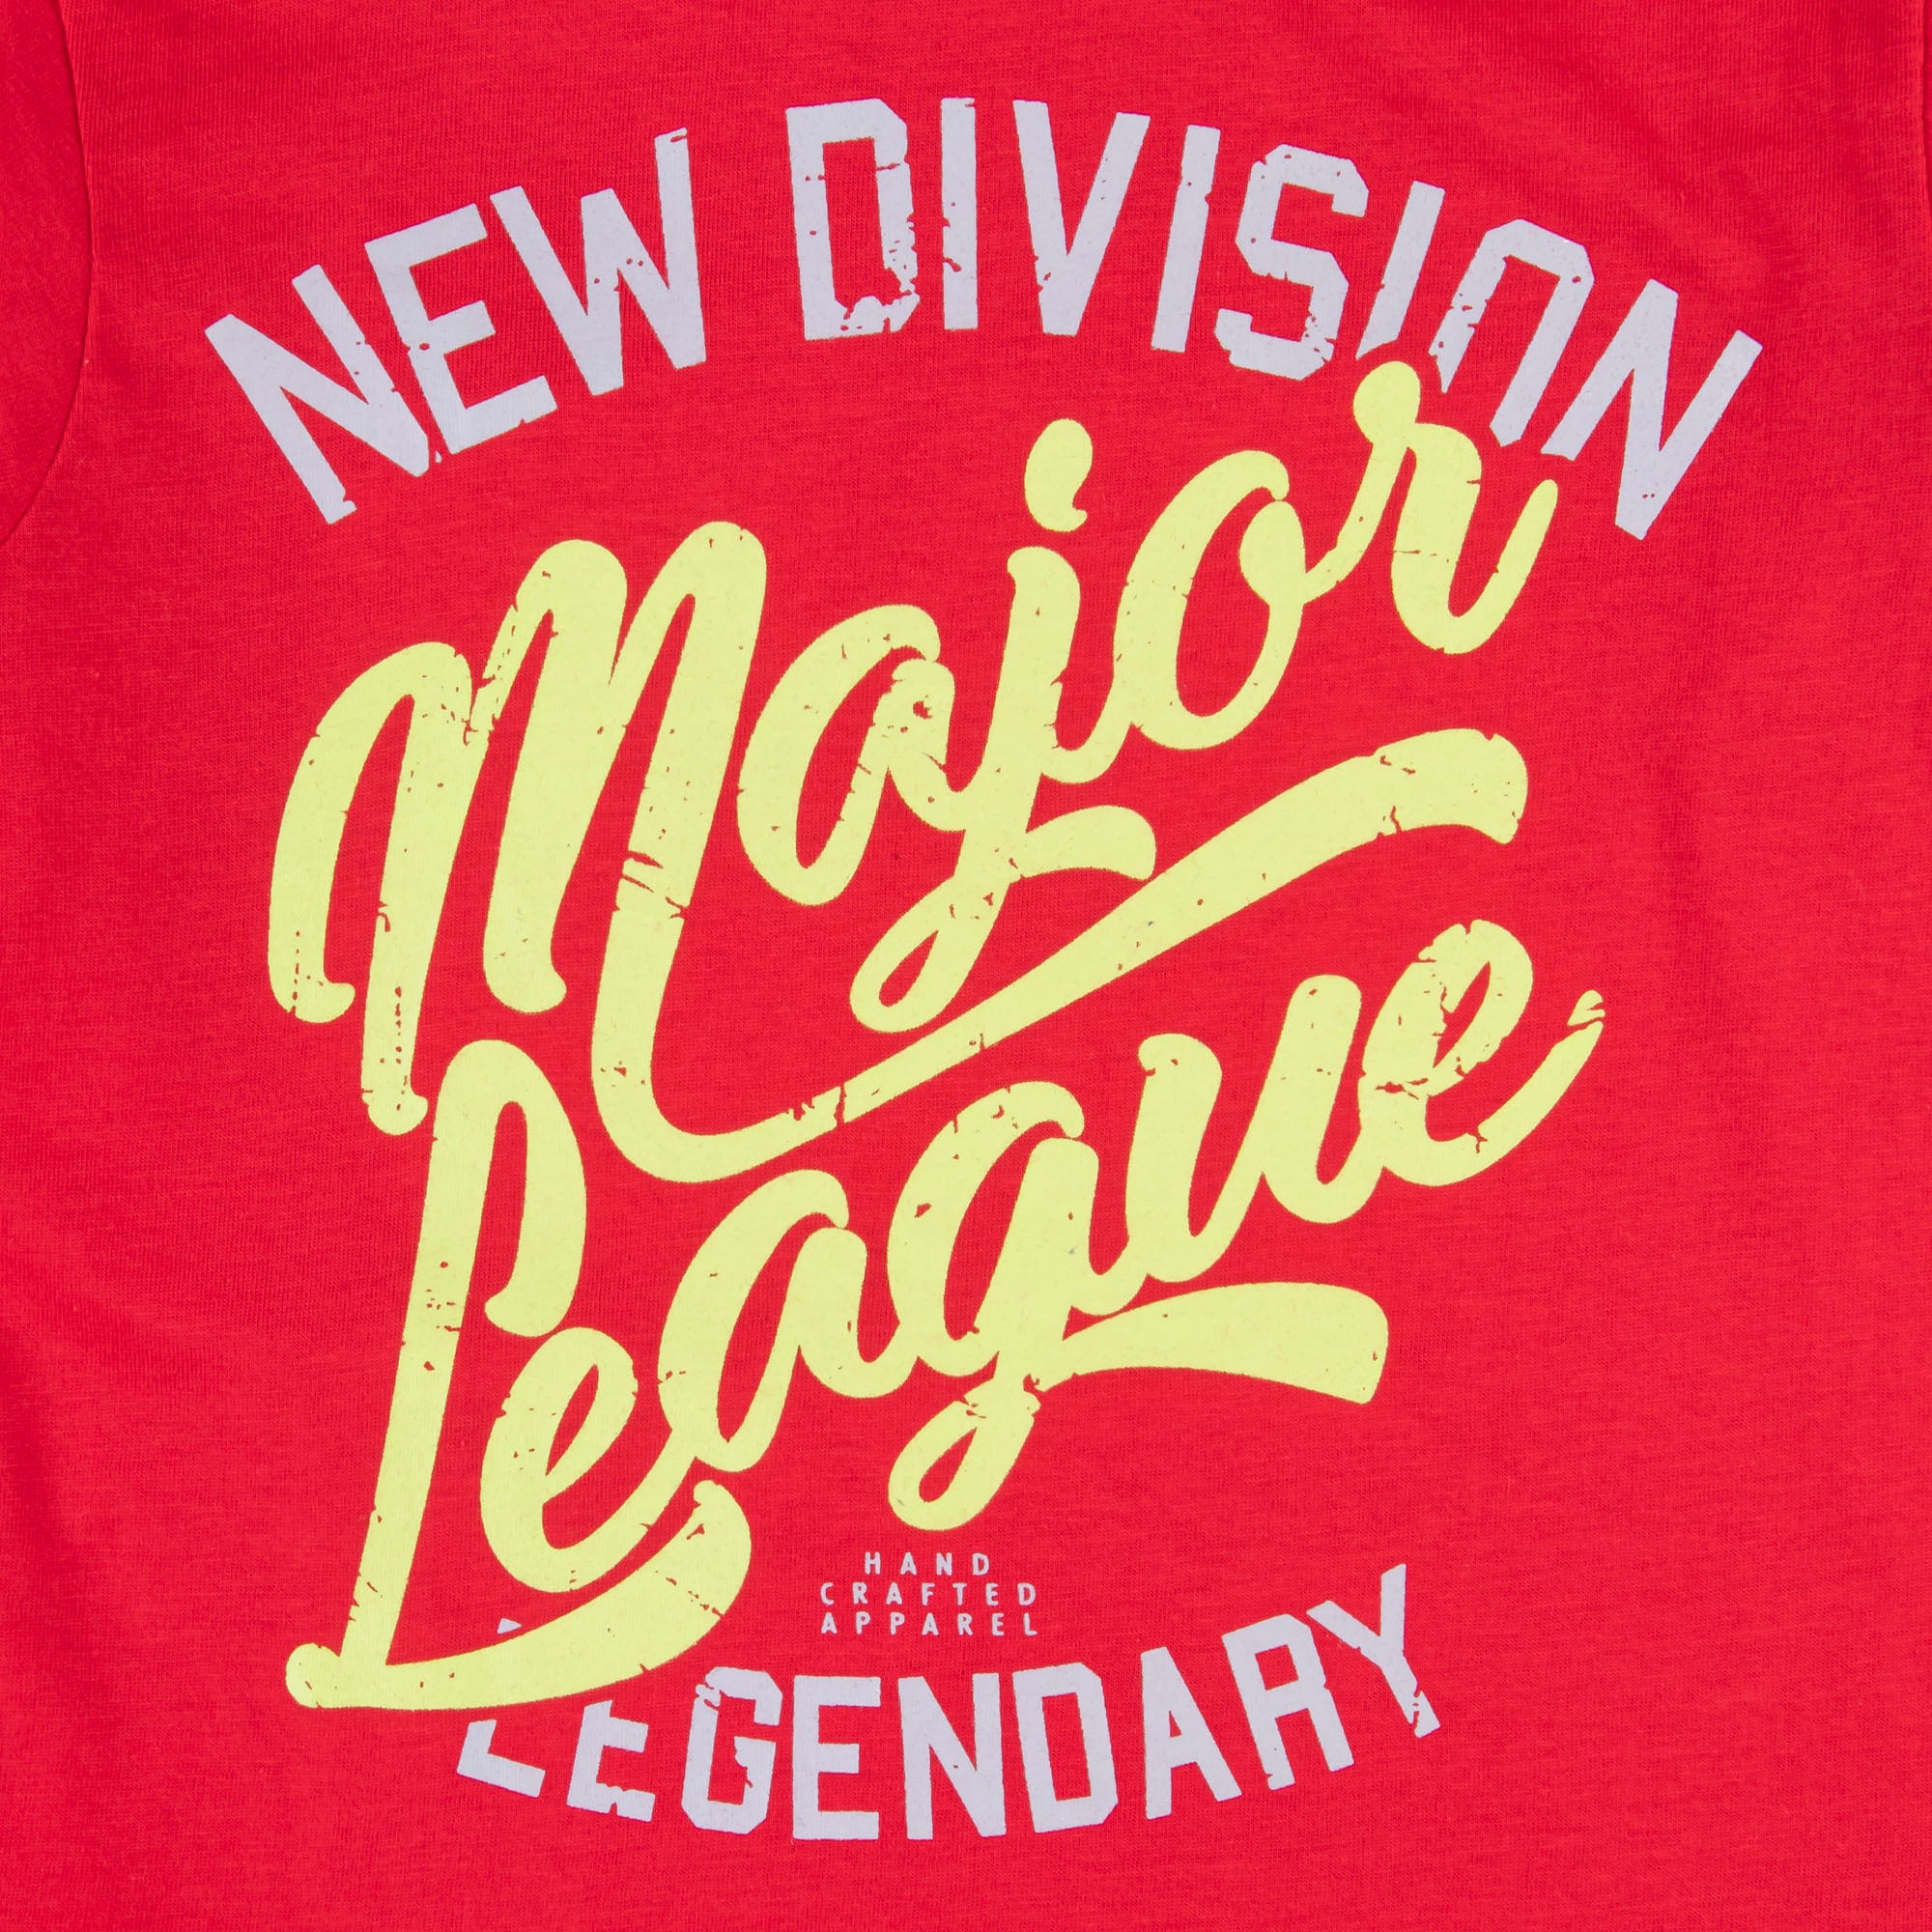 Major League T-shirt